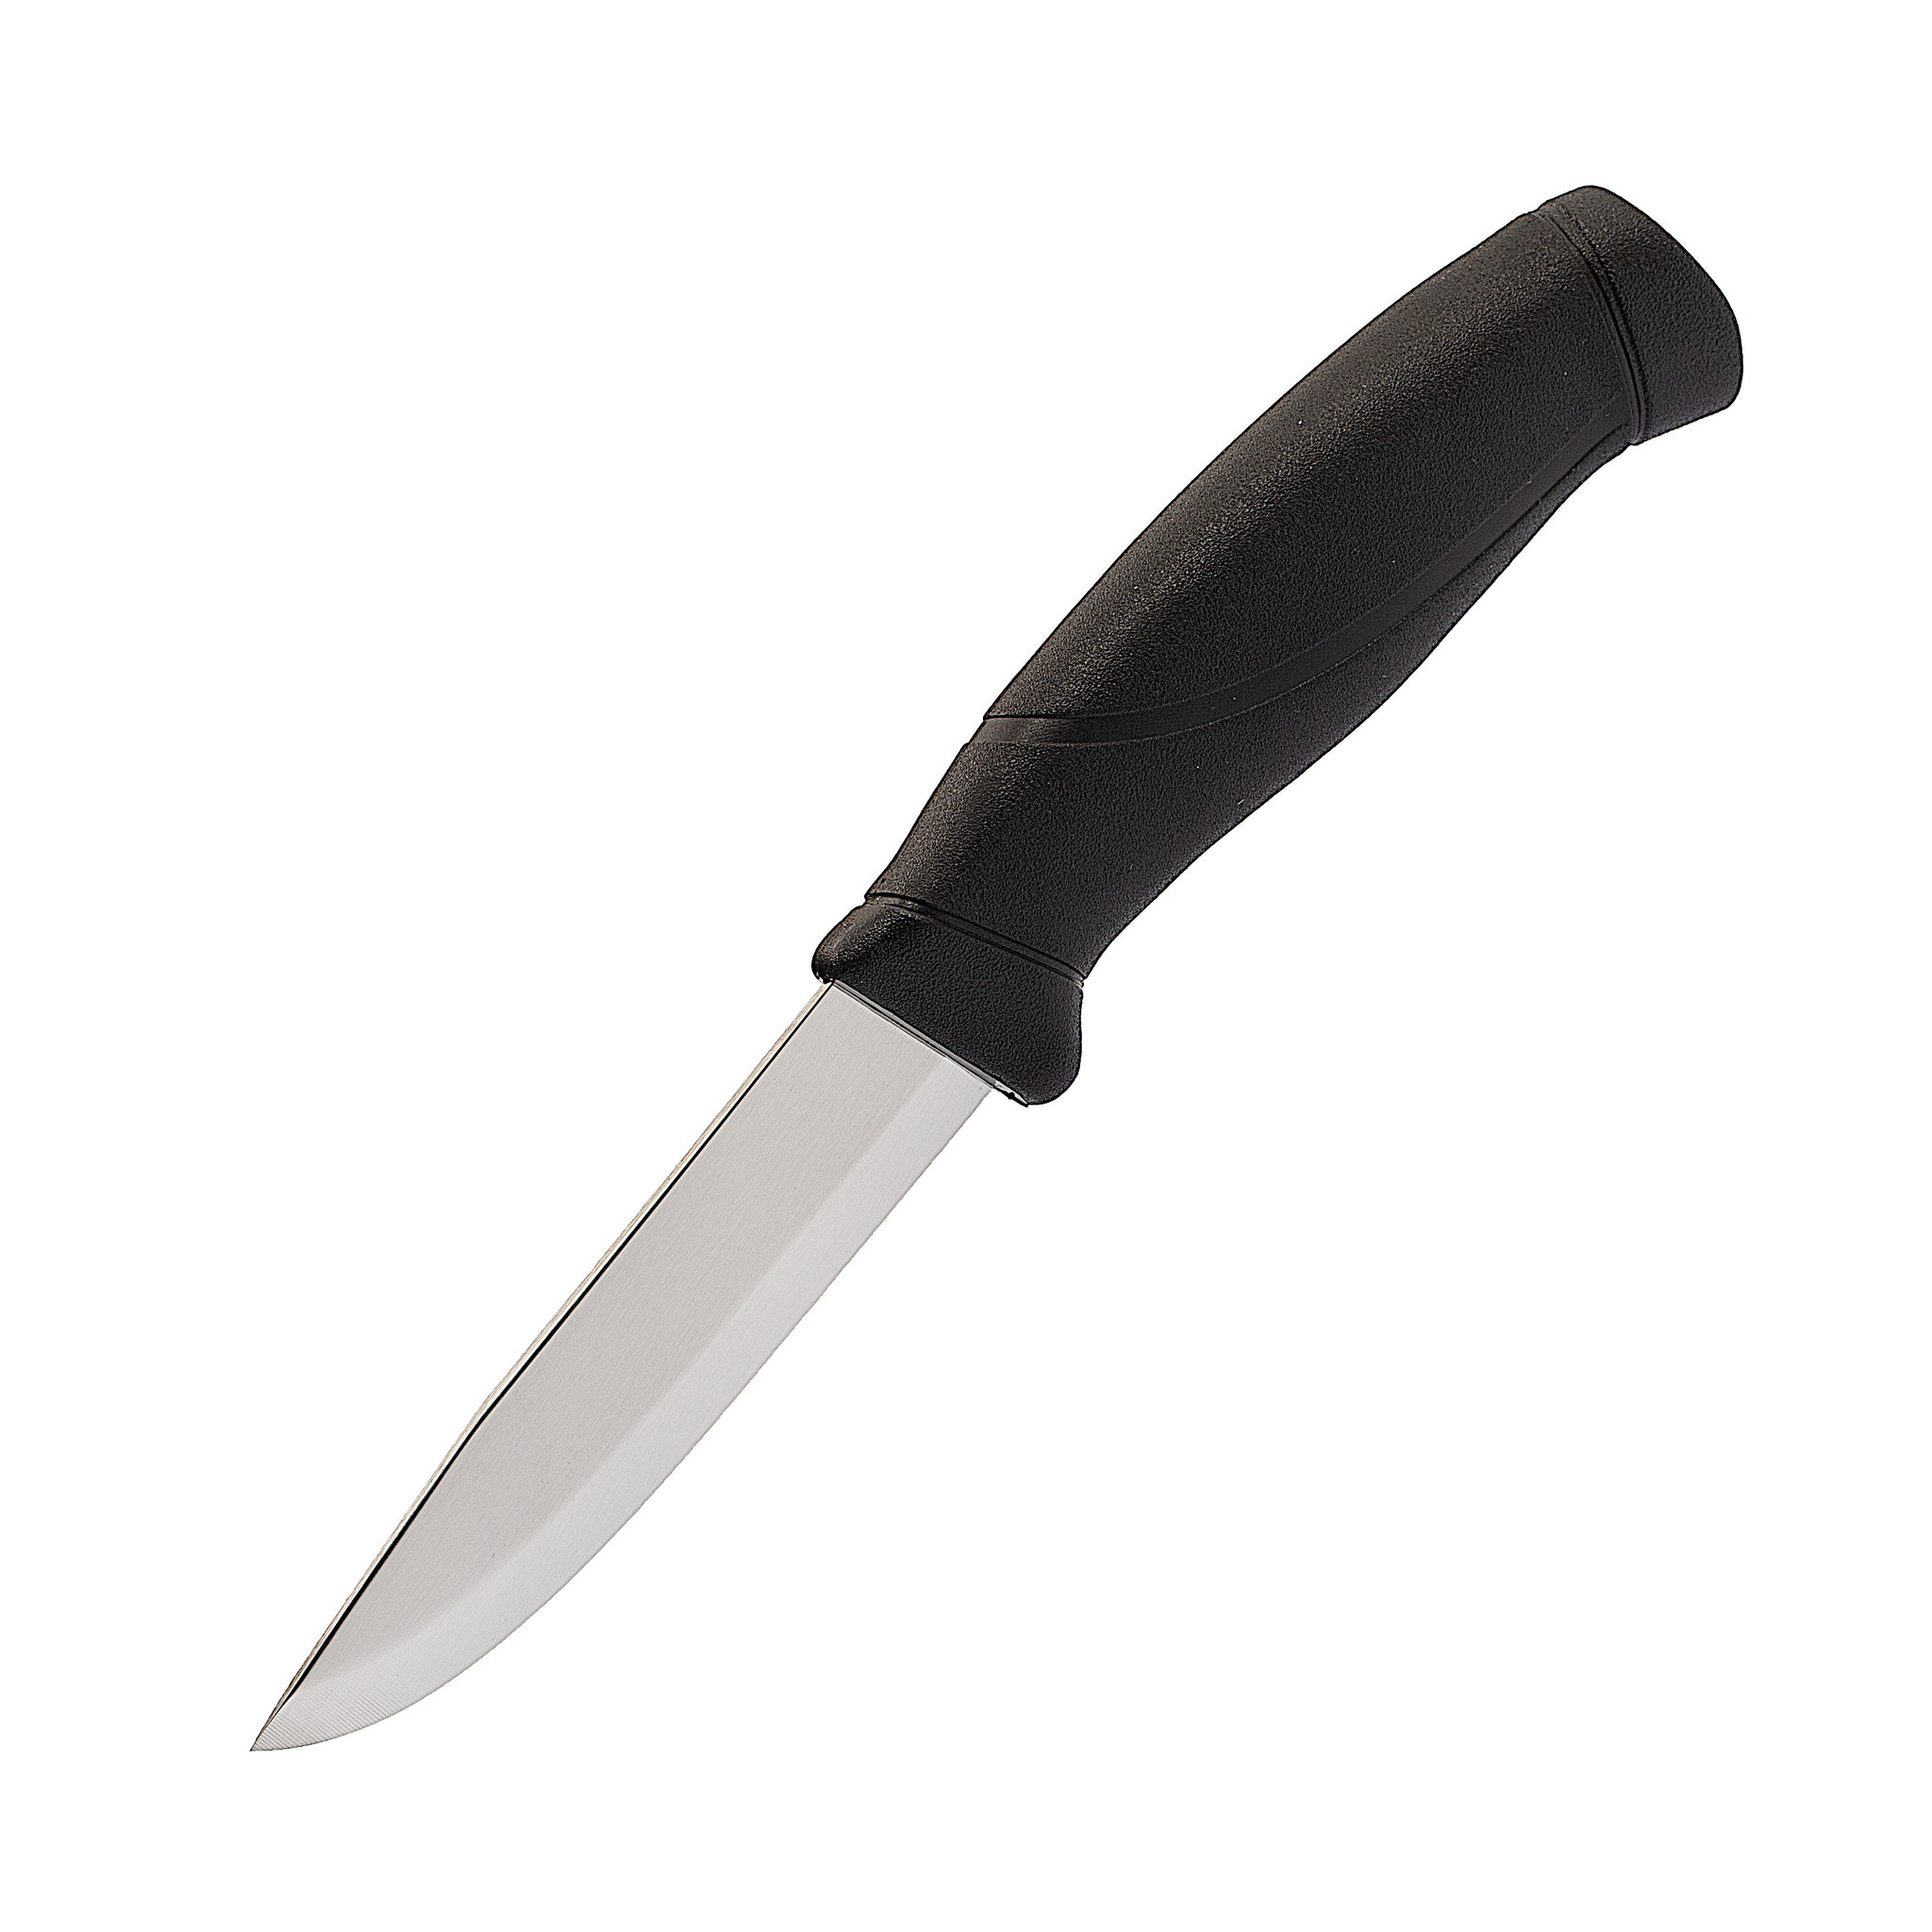 Нож с фиксированным лезвием Morakniv Companion Black, сталь Sandvik 12C27, рукоять пластик/резина